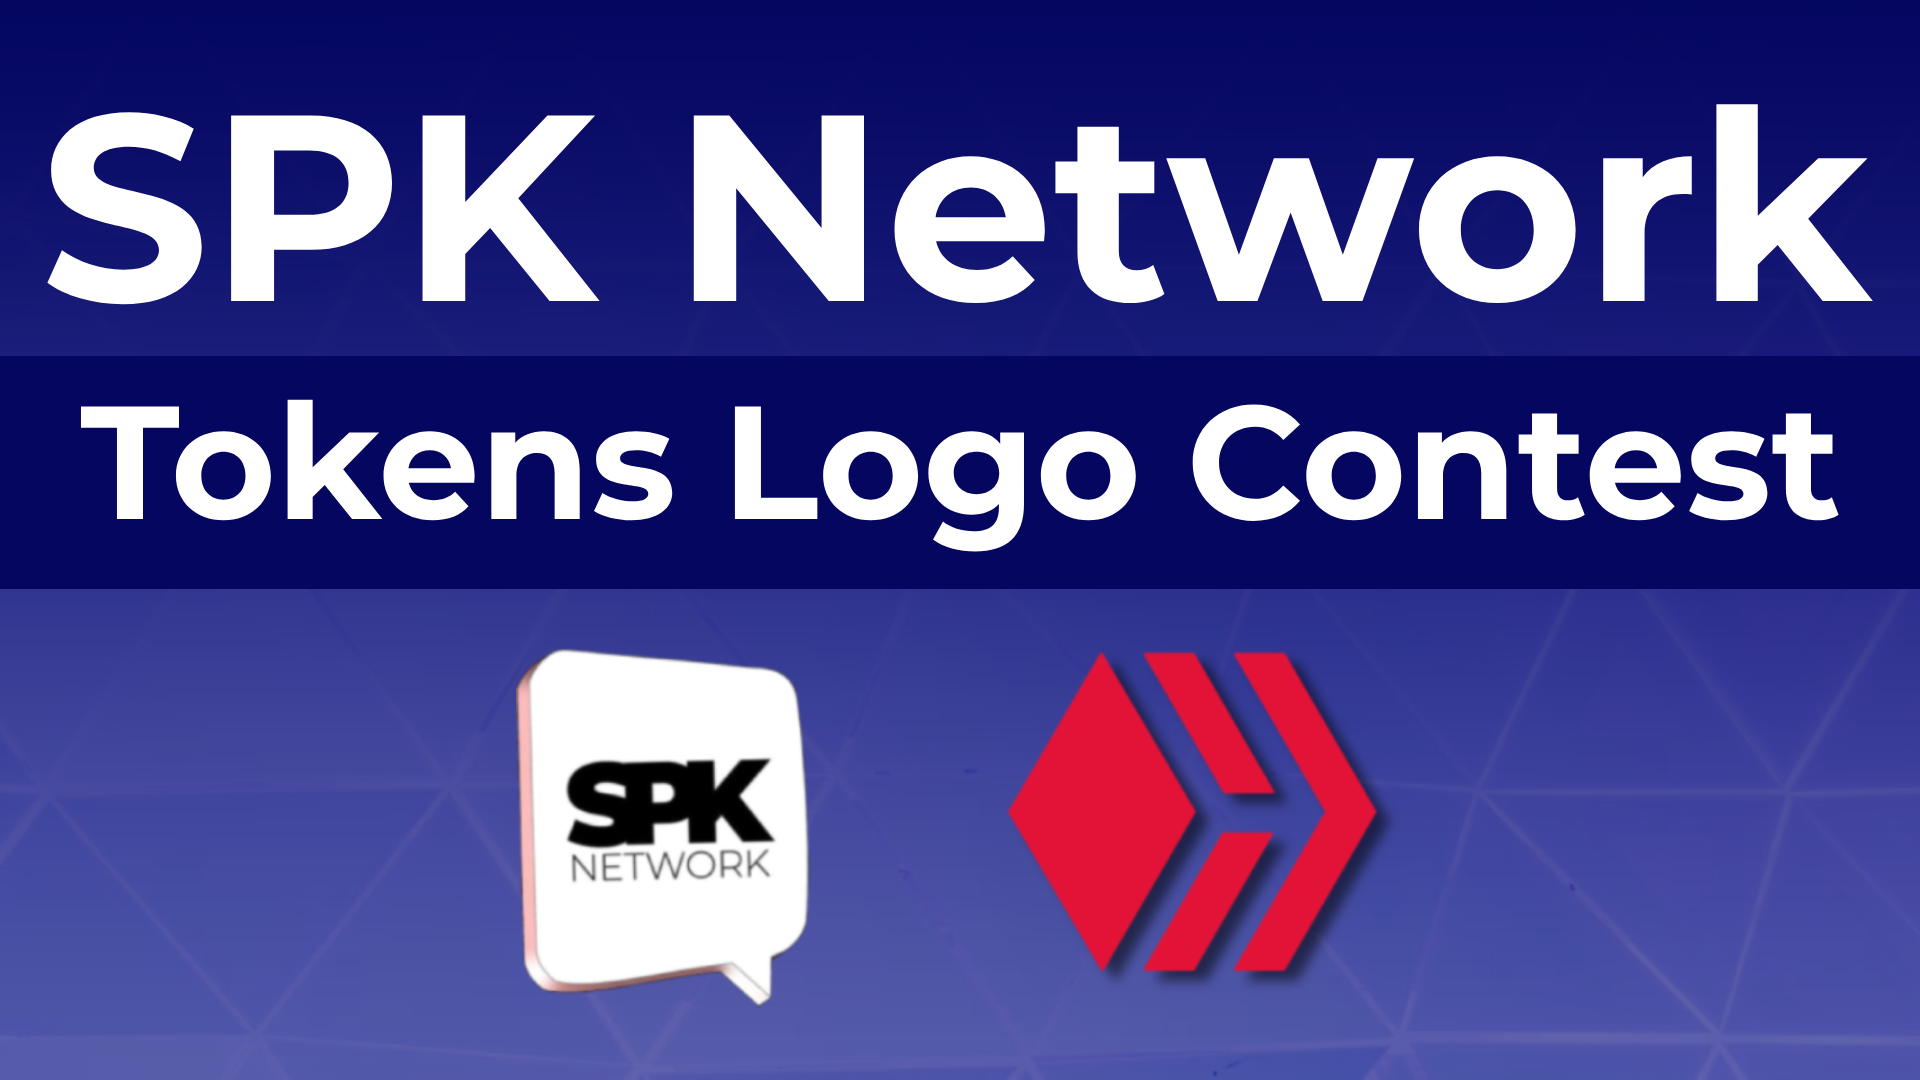 @spknetwork/spk-network-tokens-logo-contest